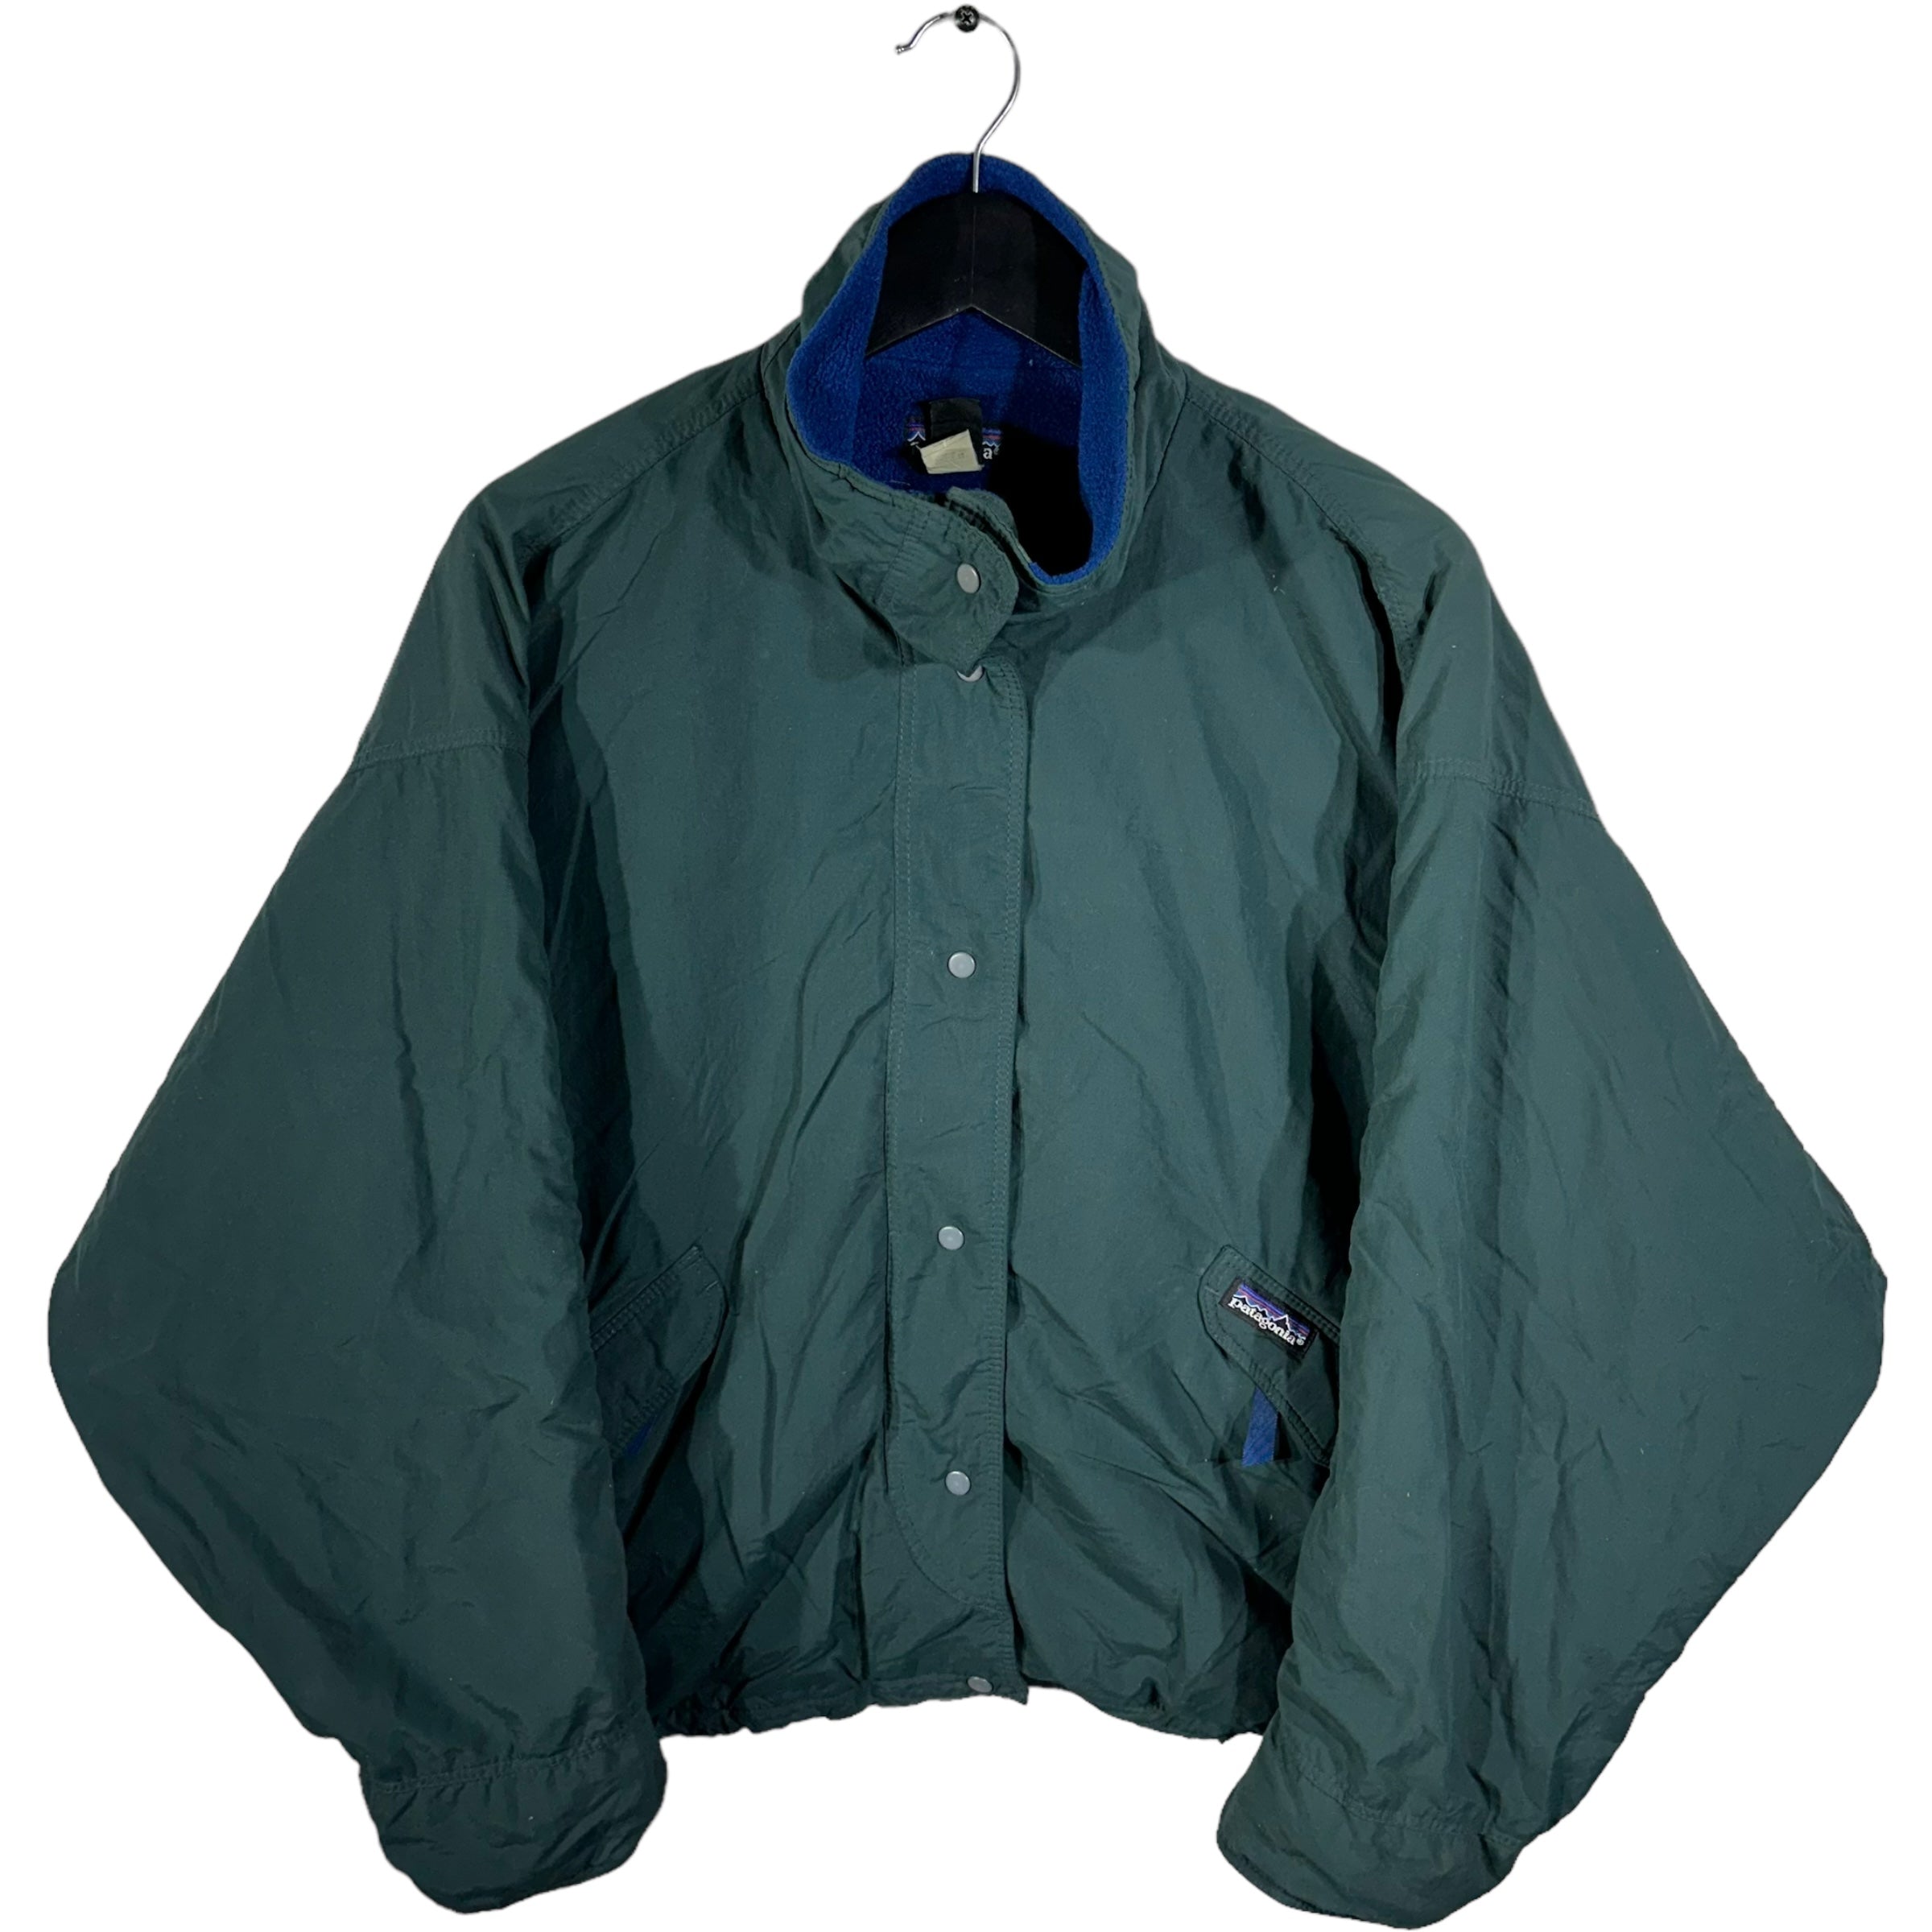 Vintage Patagonia Nylon Jacket